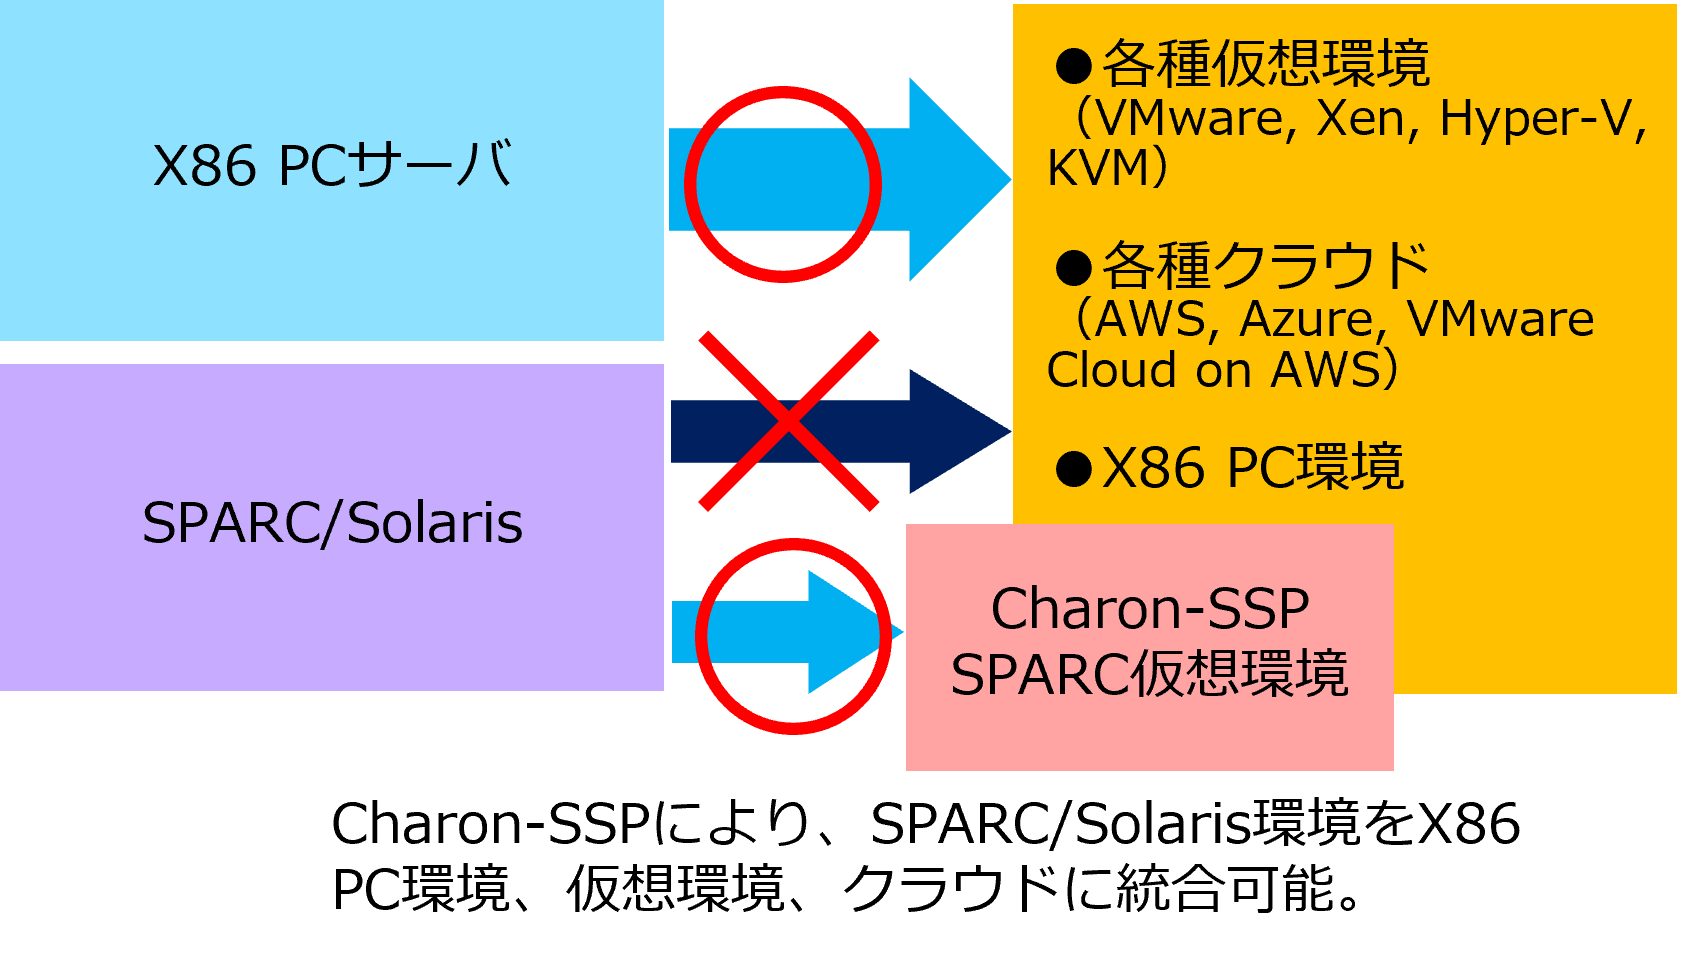 SPARC/Solaris環境のマイグレーション